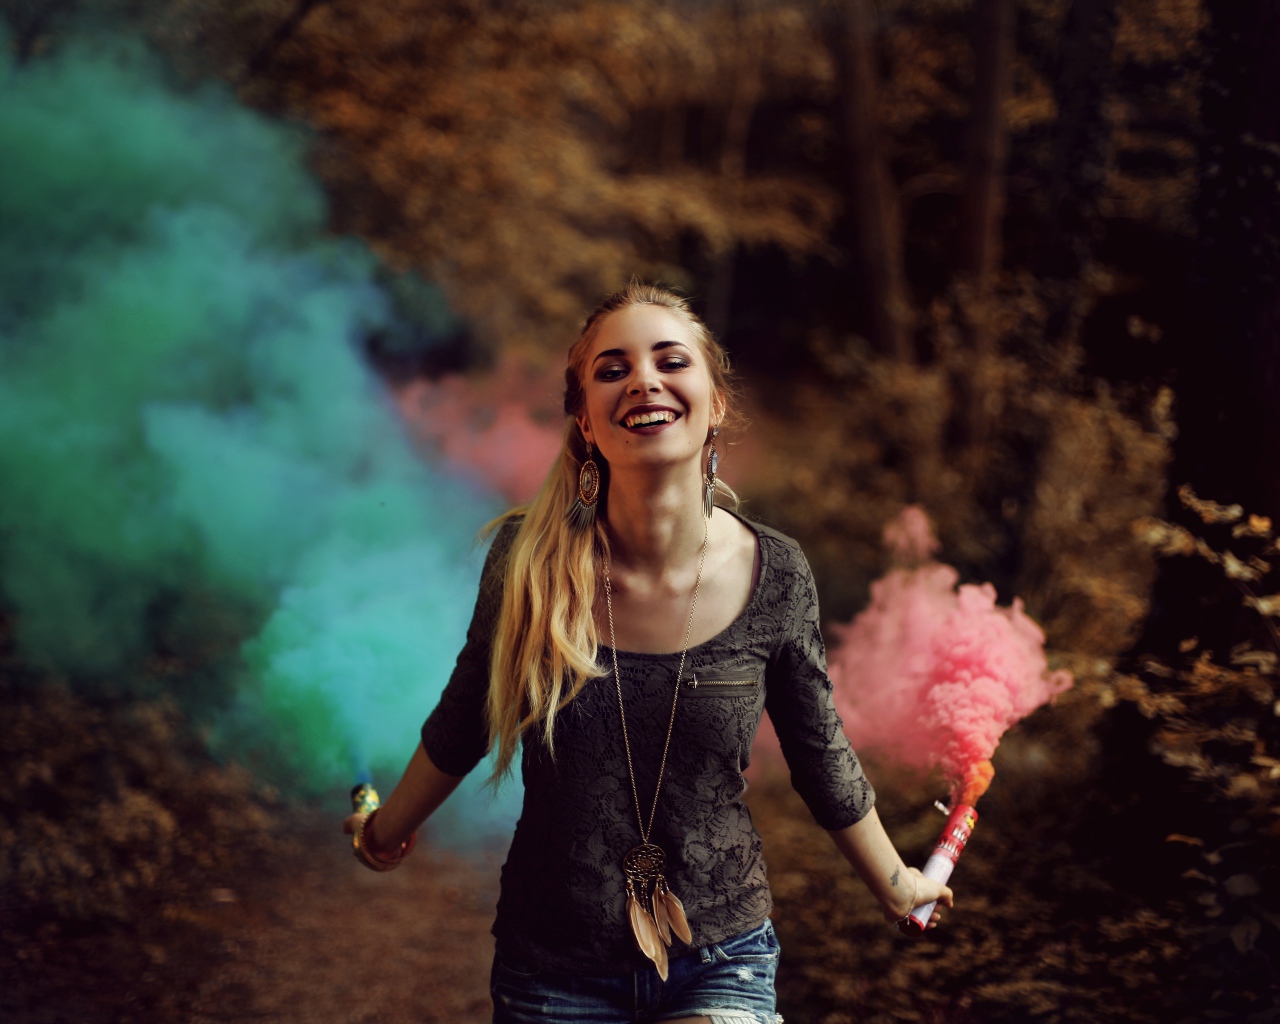 Красивая улыбающаяся девушка с дымовыми шашками в руках